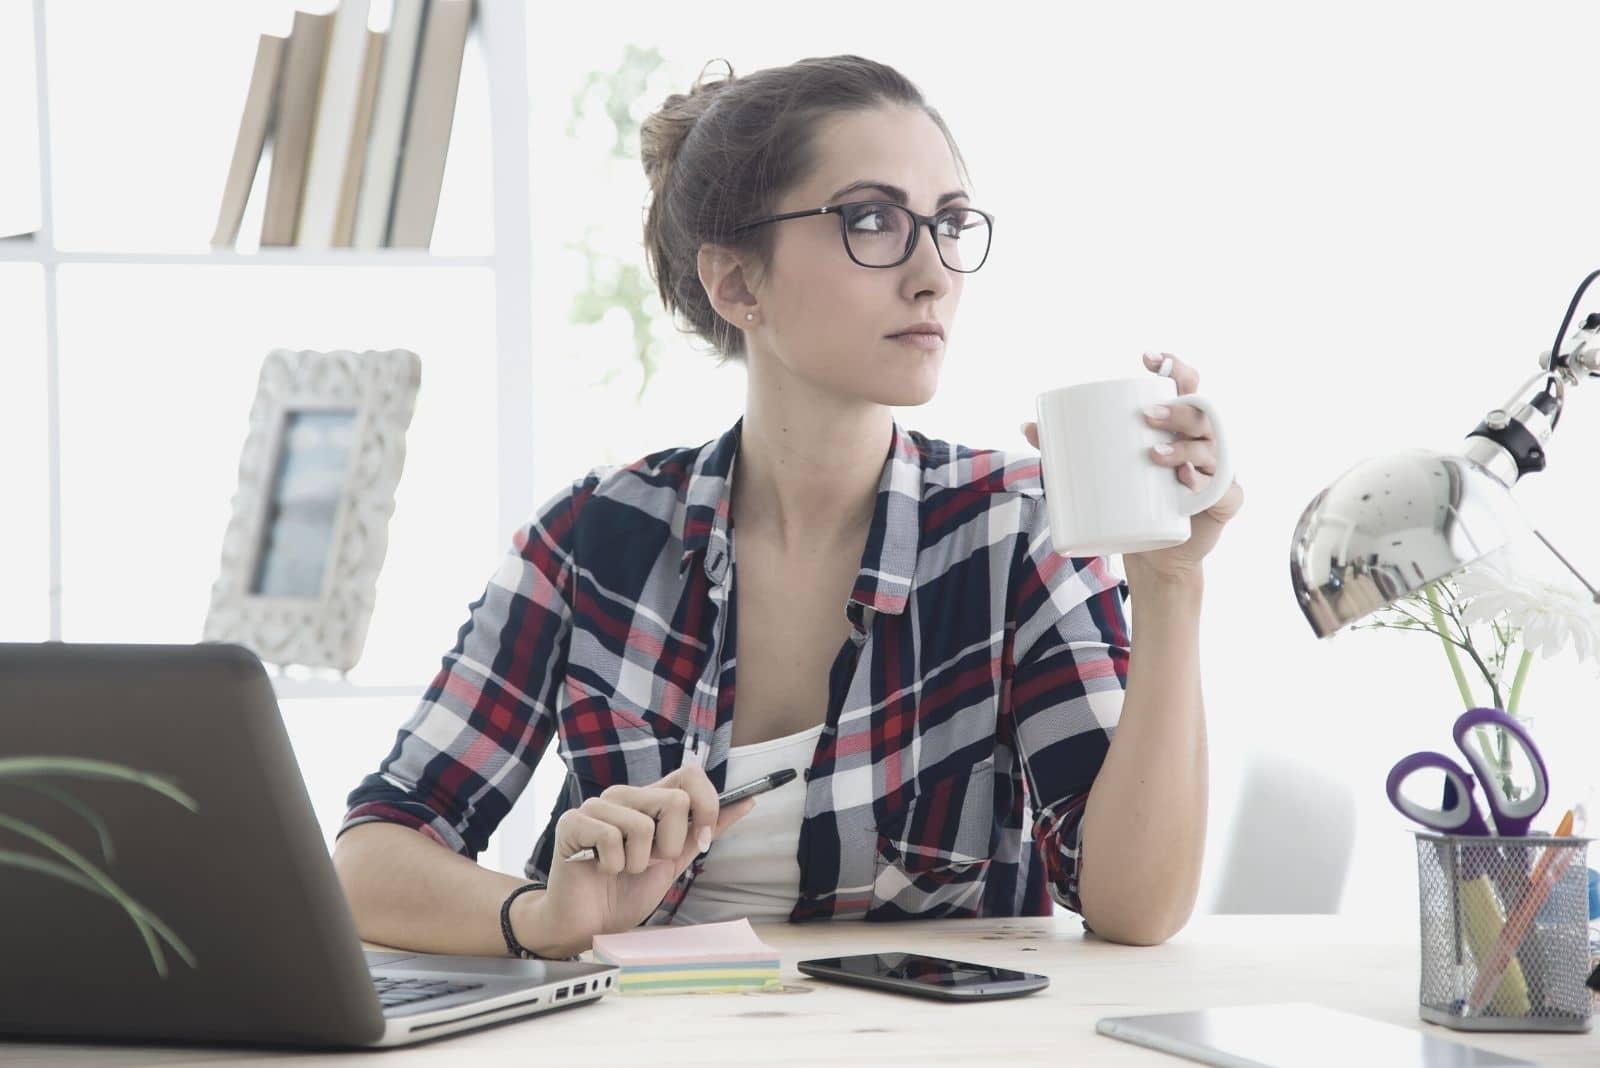 donna seduta in ufficio che pensa e guarda lontano, indossando occhiali da vista e bevendo da una tazza